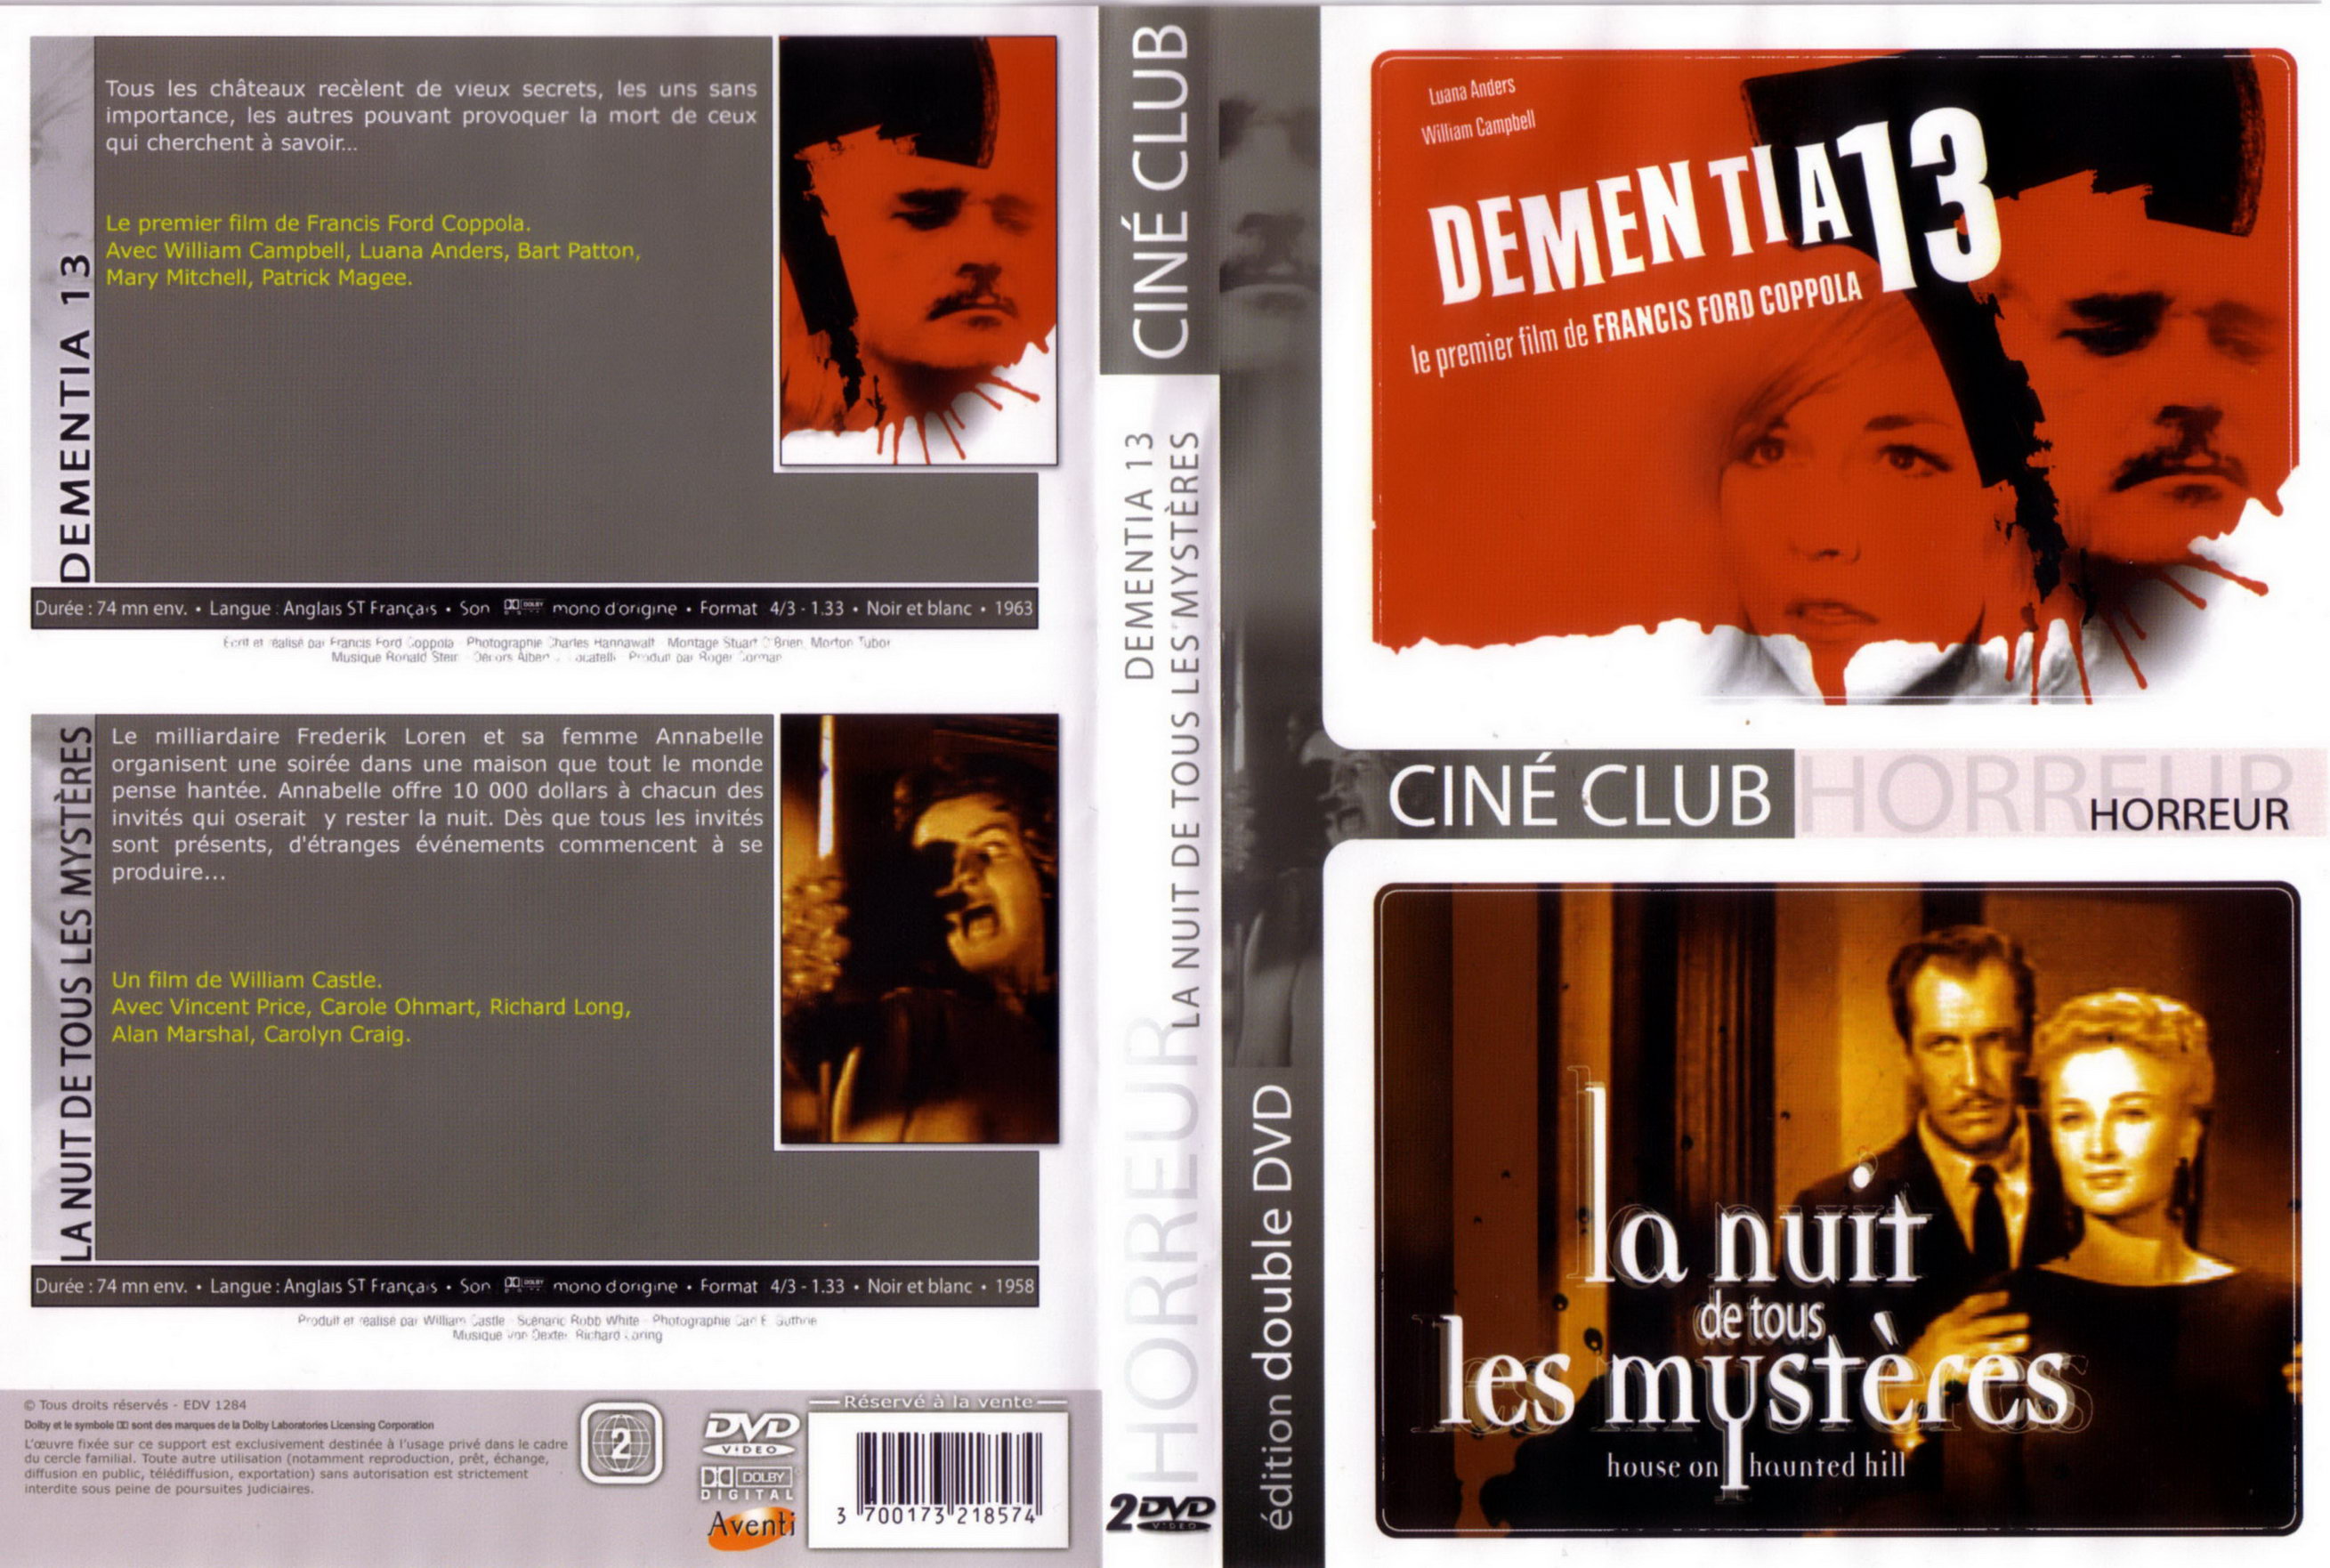 Jaquette DVD Dementia 13 + La nuit de tous les mysteres